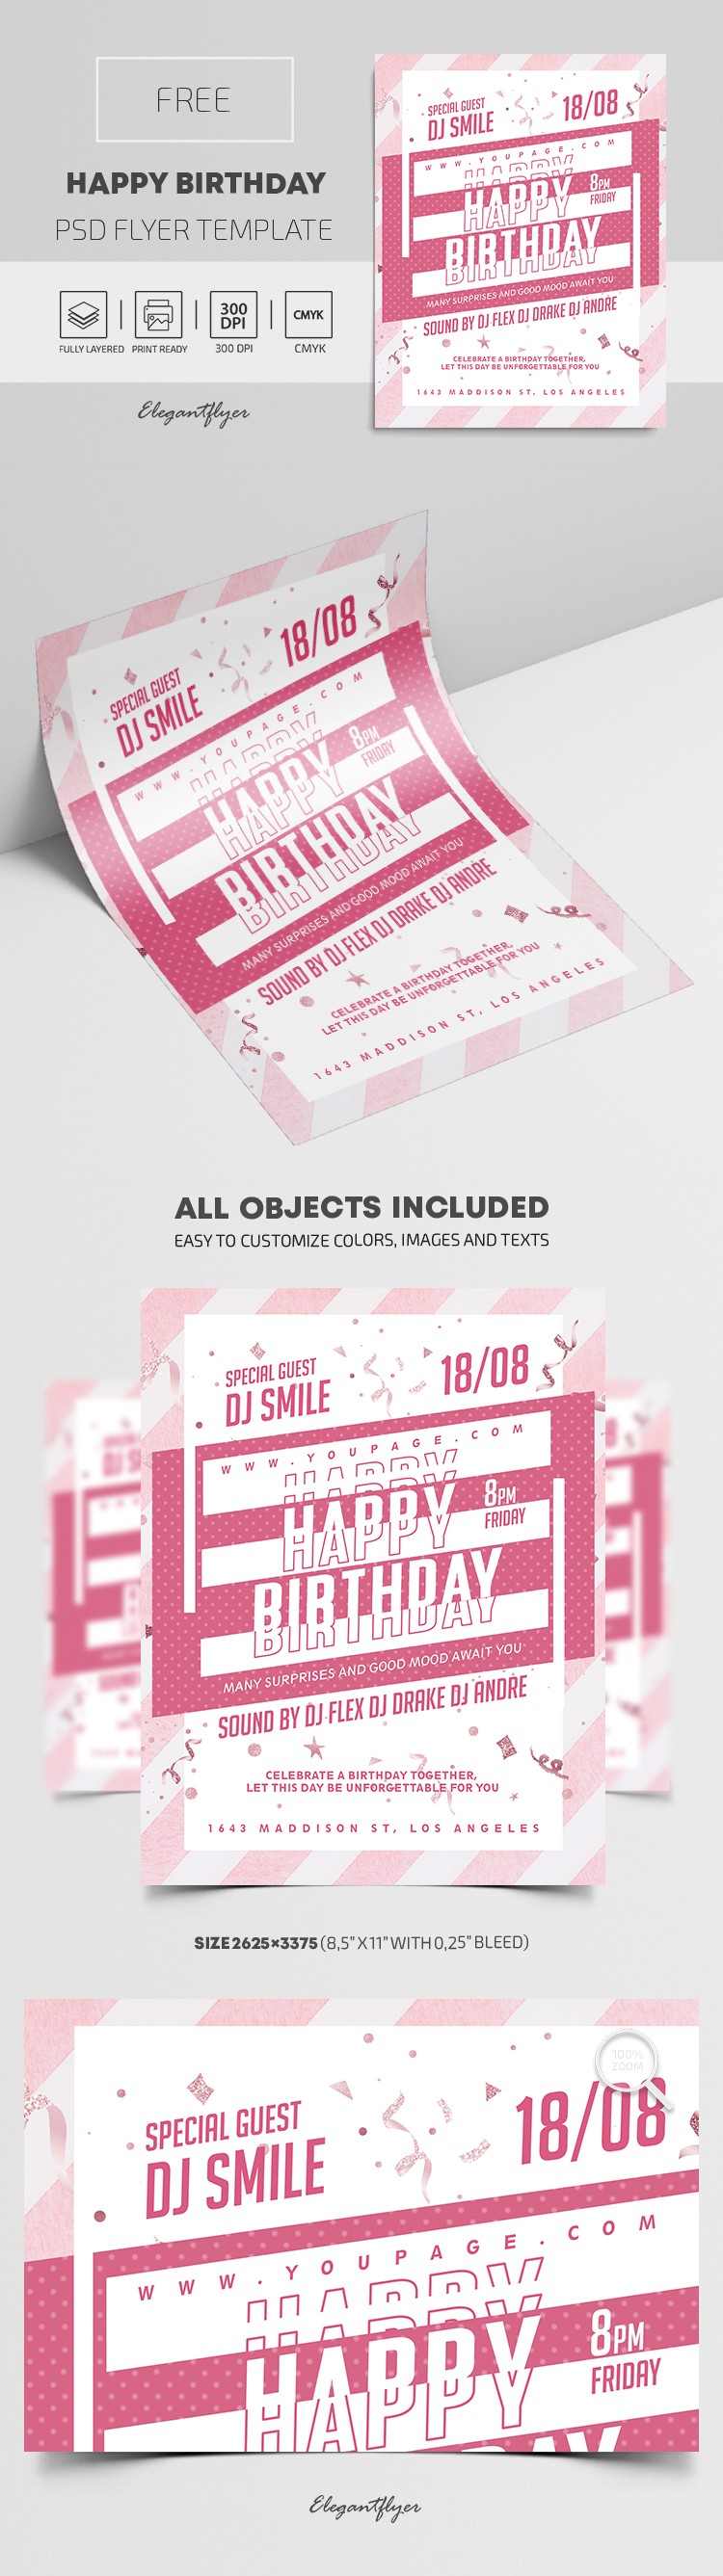 Happy Birthday Flyer by ElegantFlyer